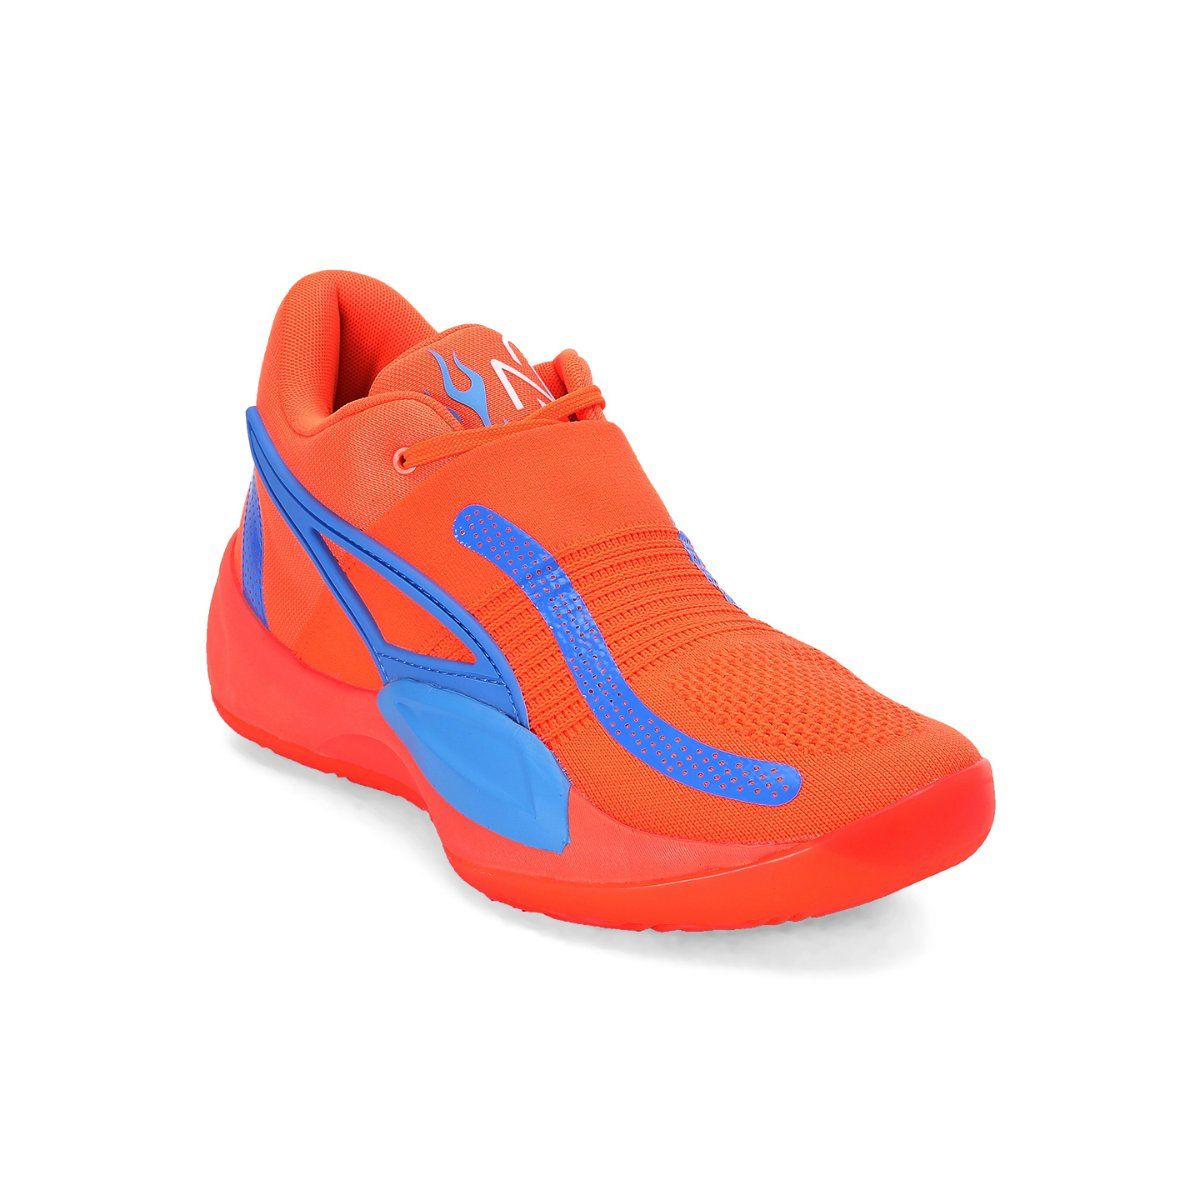 Puma Rise Nitro Njr Unisex Orange Basketball Shoes